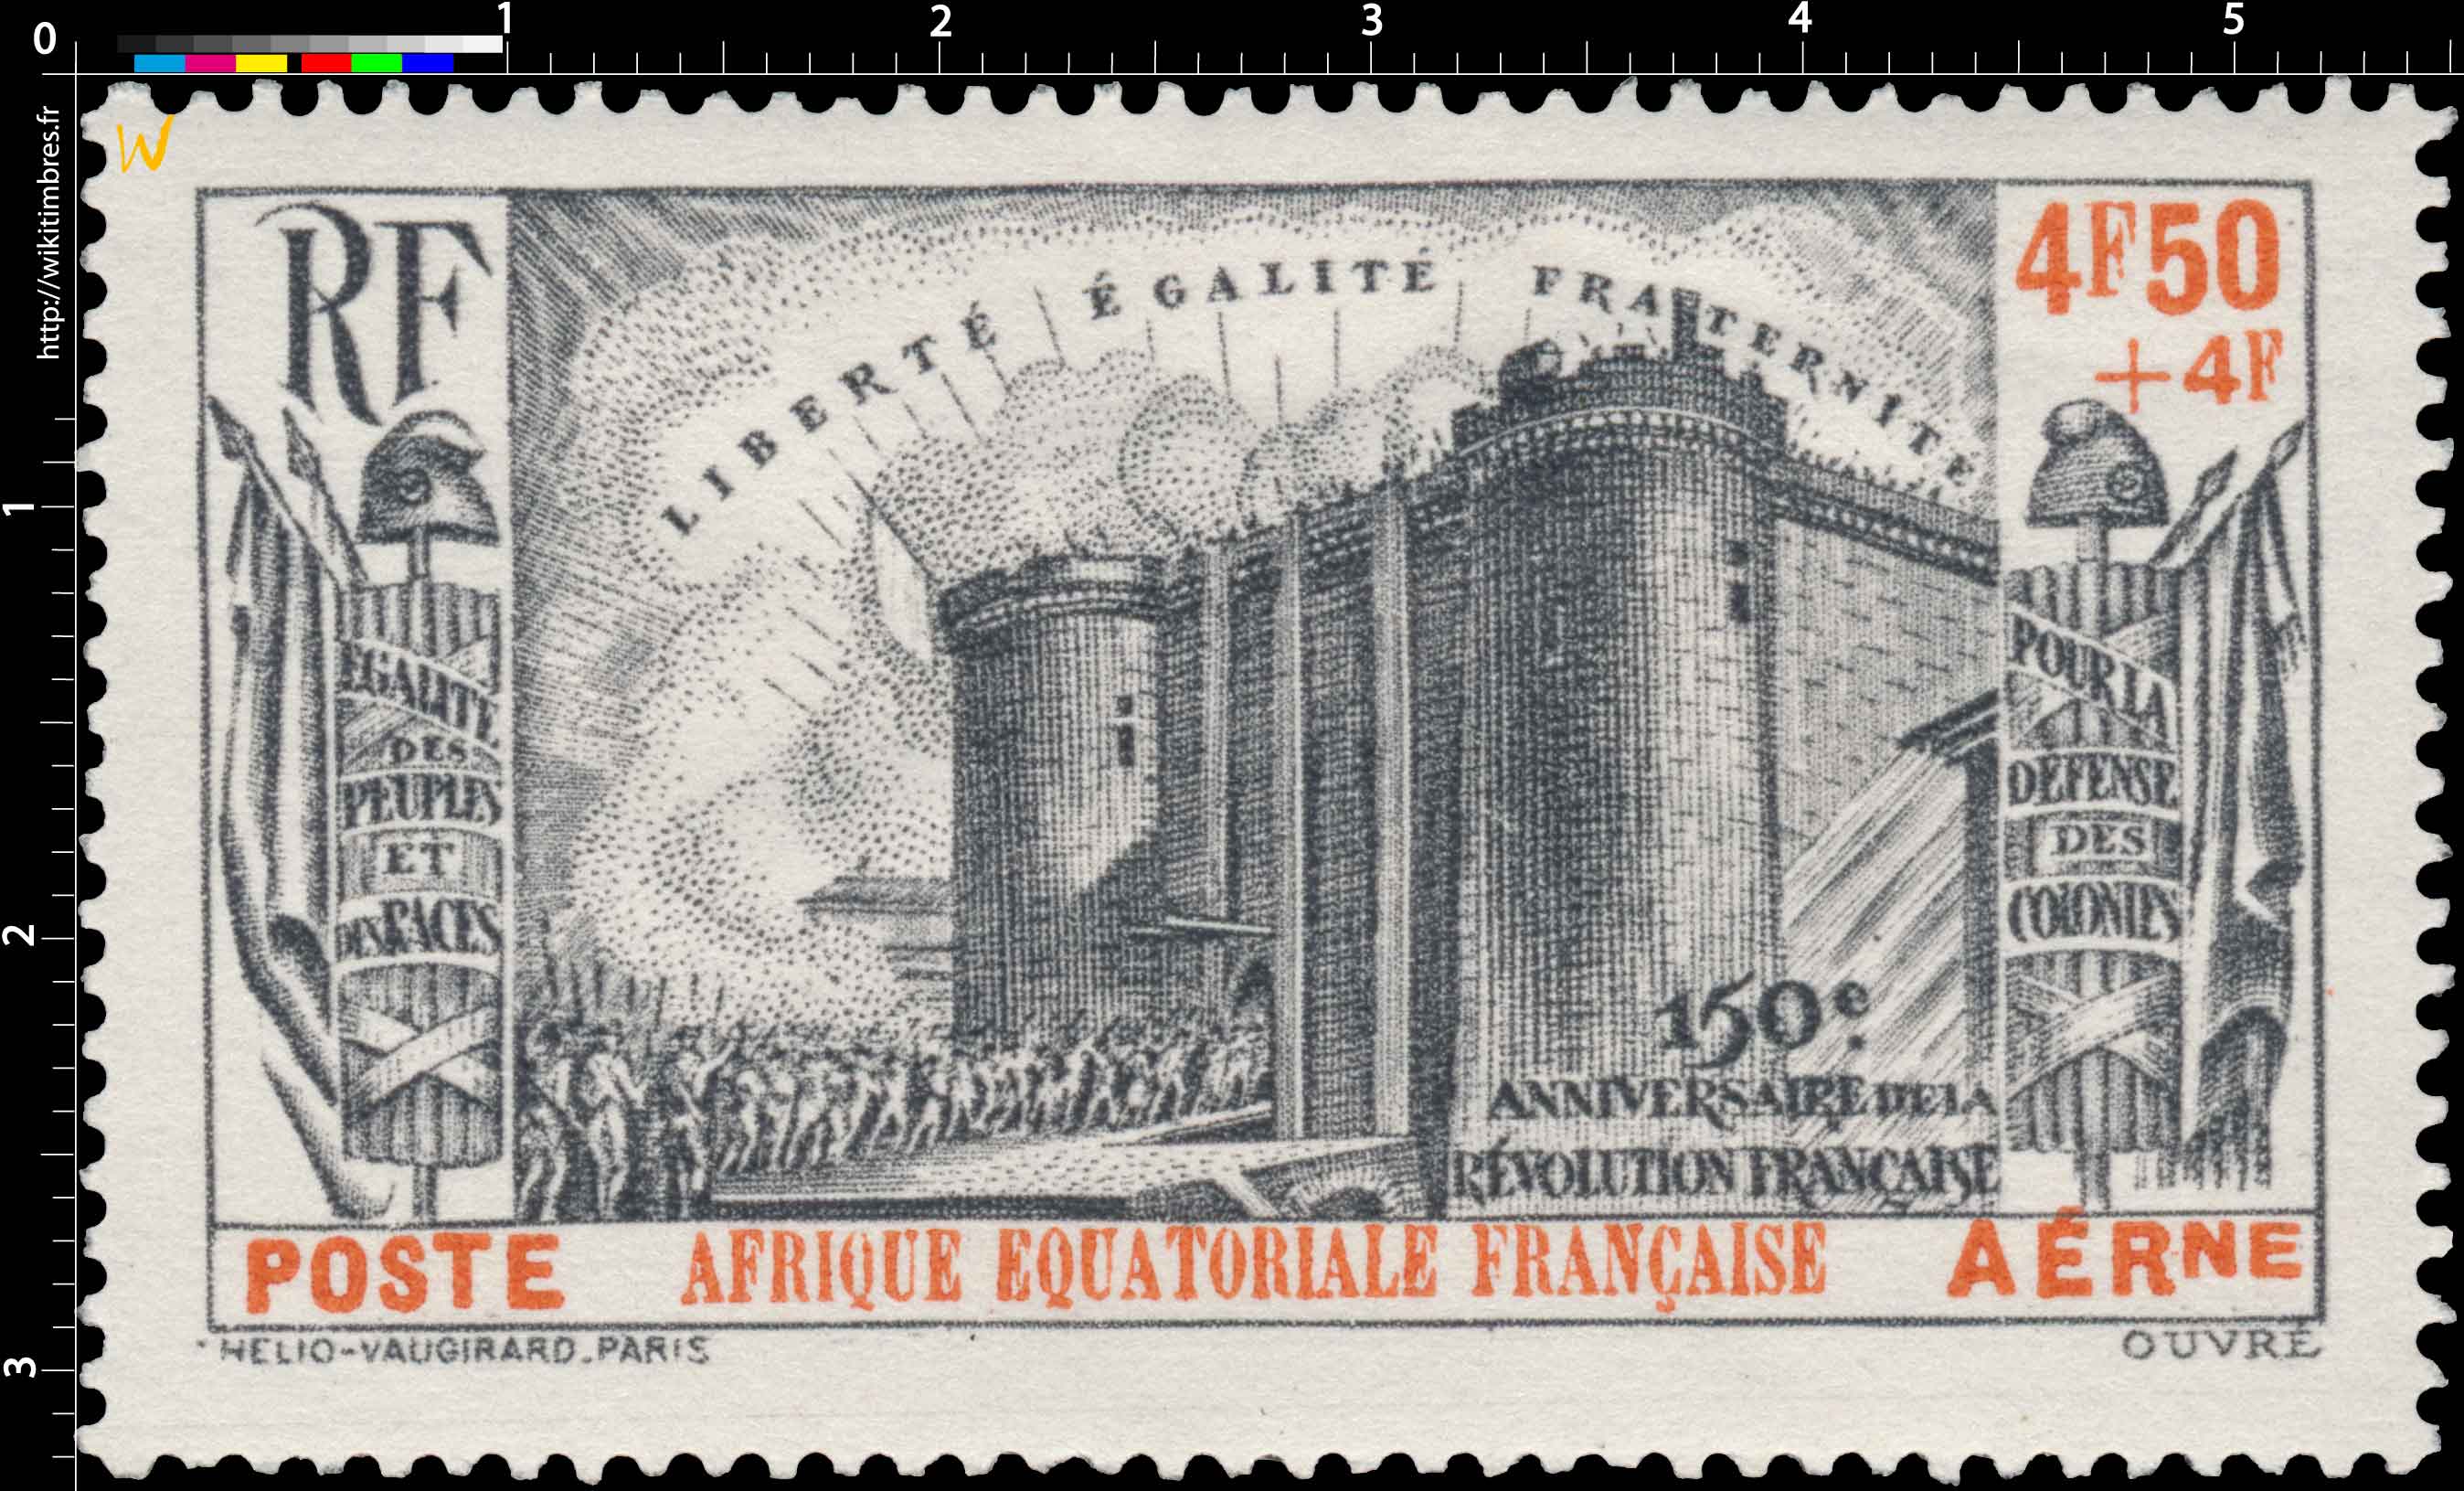 150e anniversaire de la Révolution française